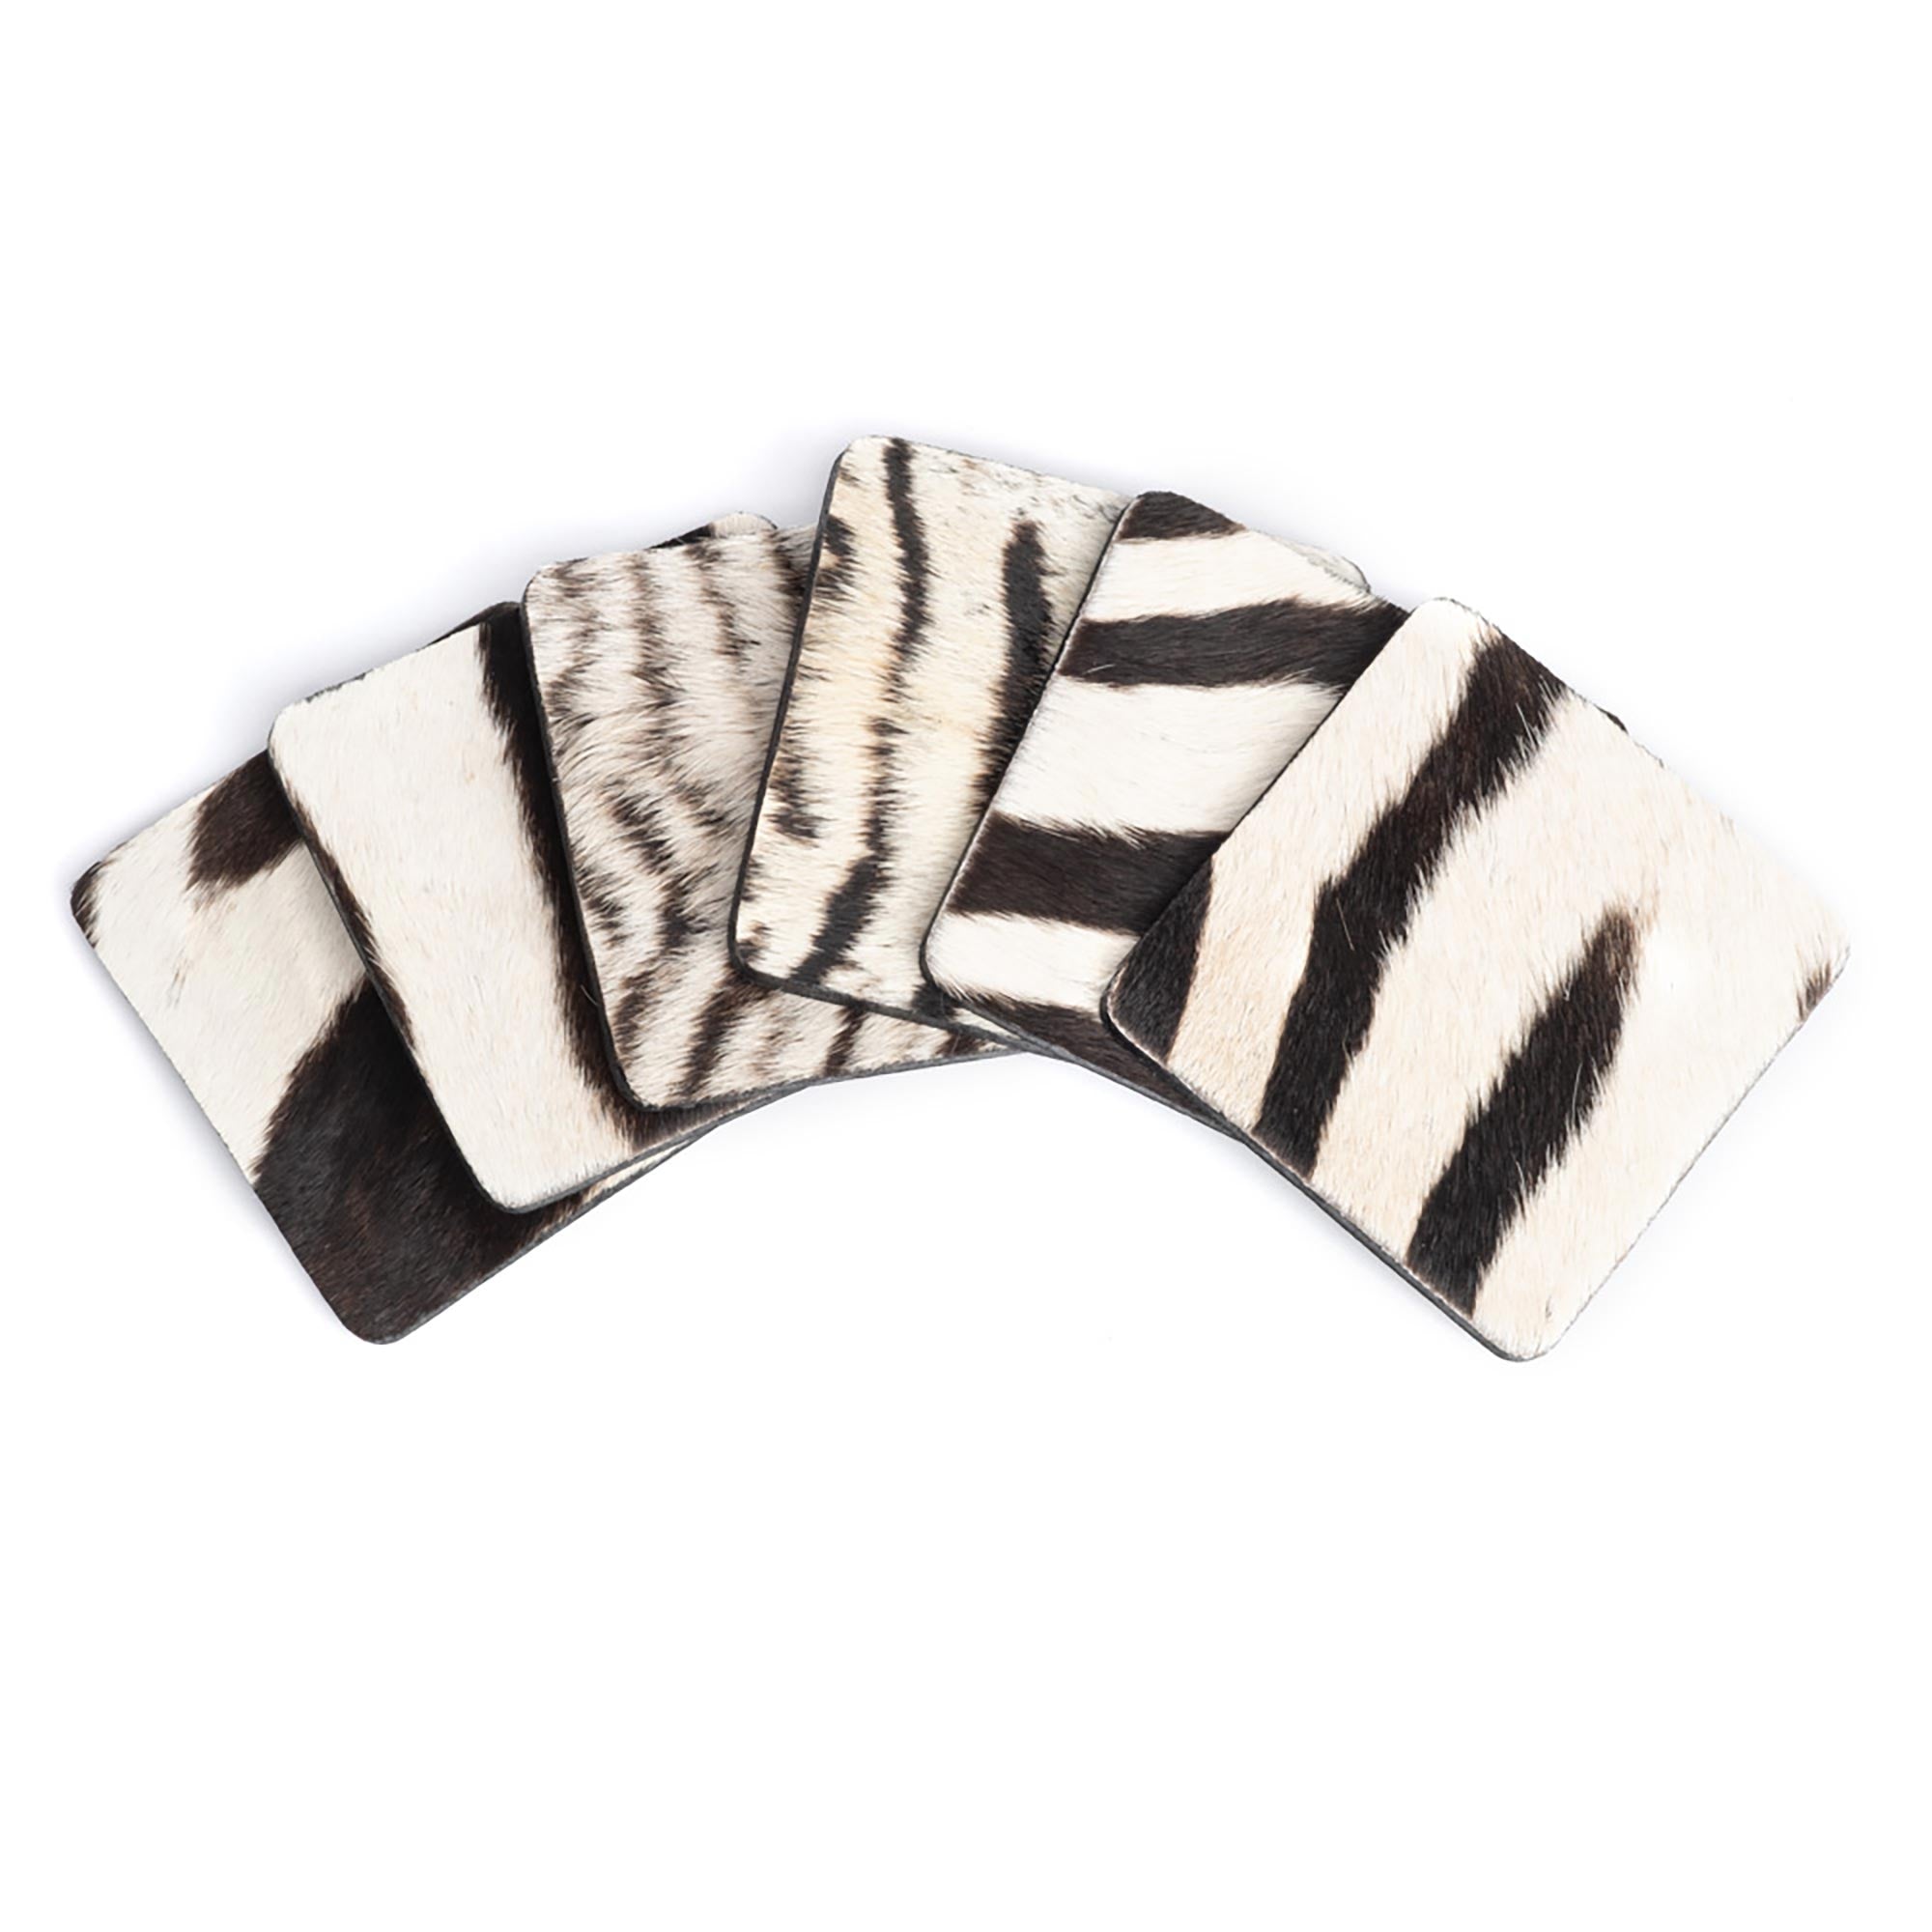 Zebra Hide Coasters w/ Tie (s/6)